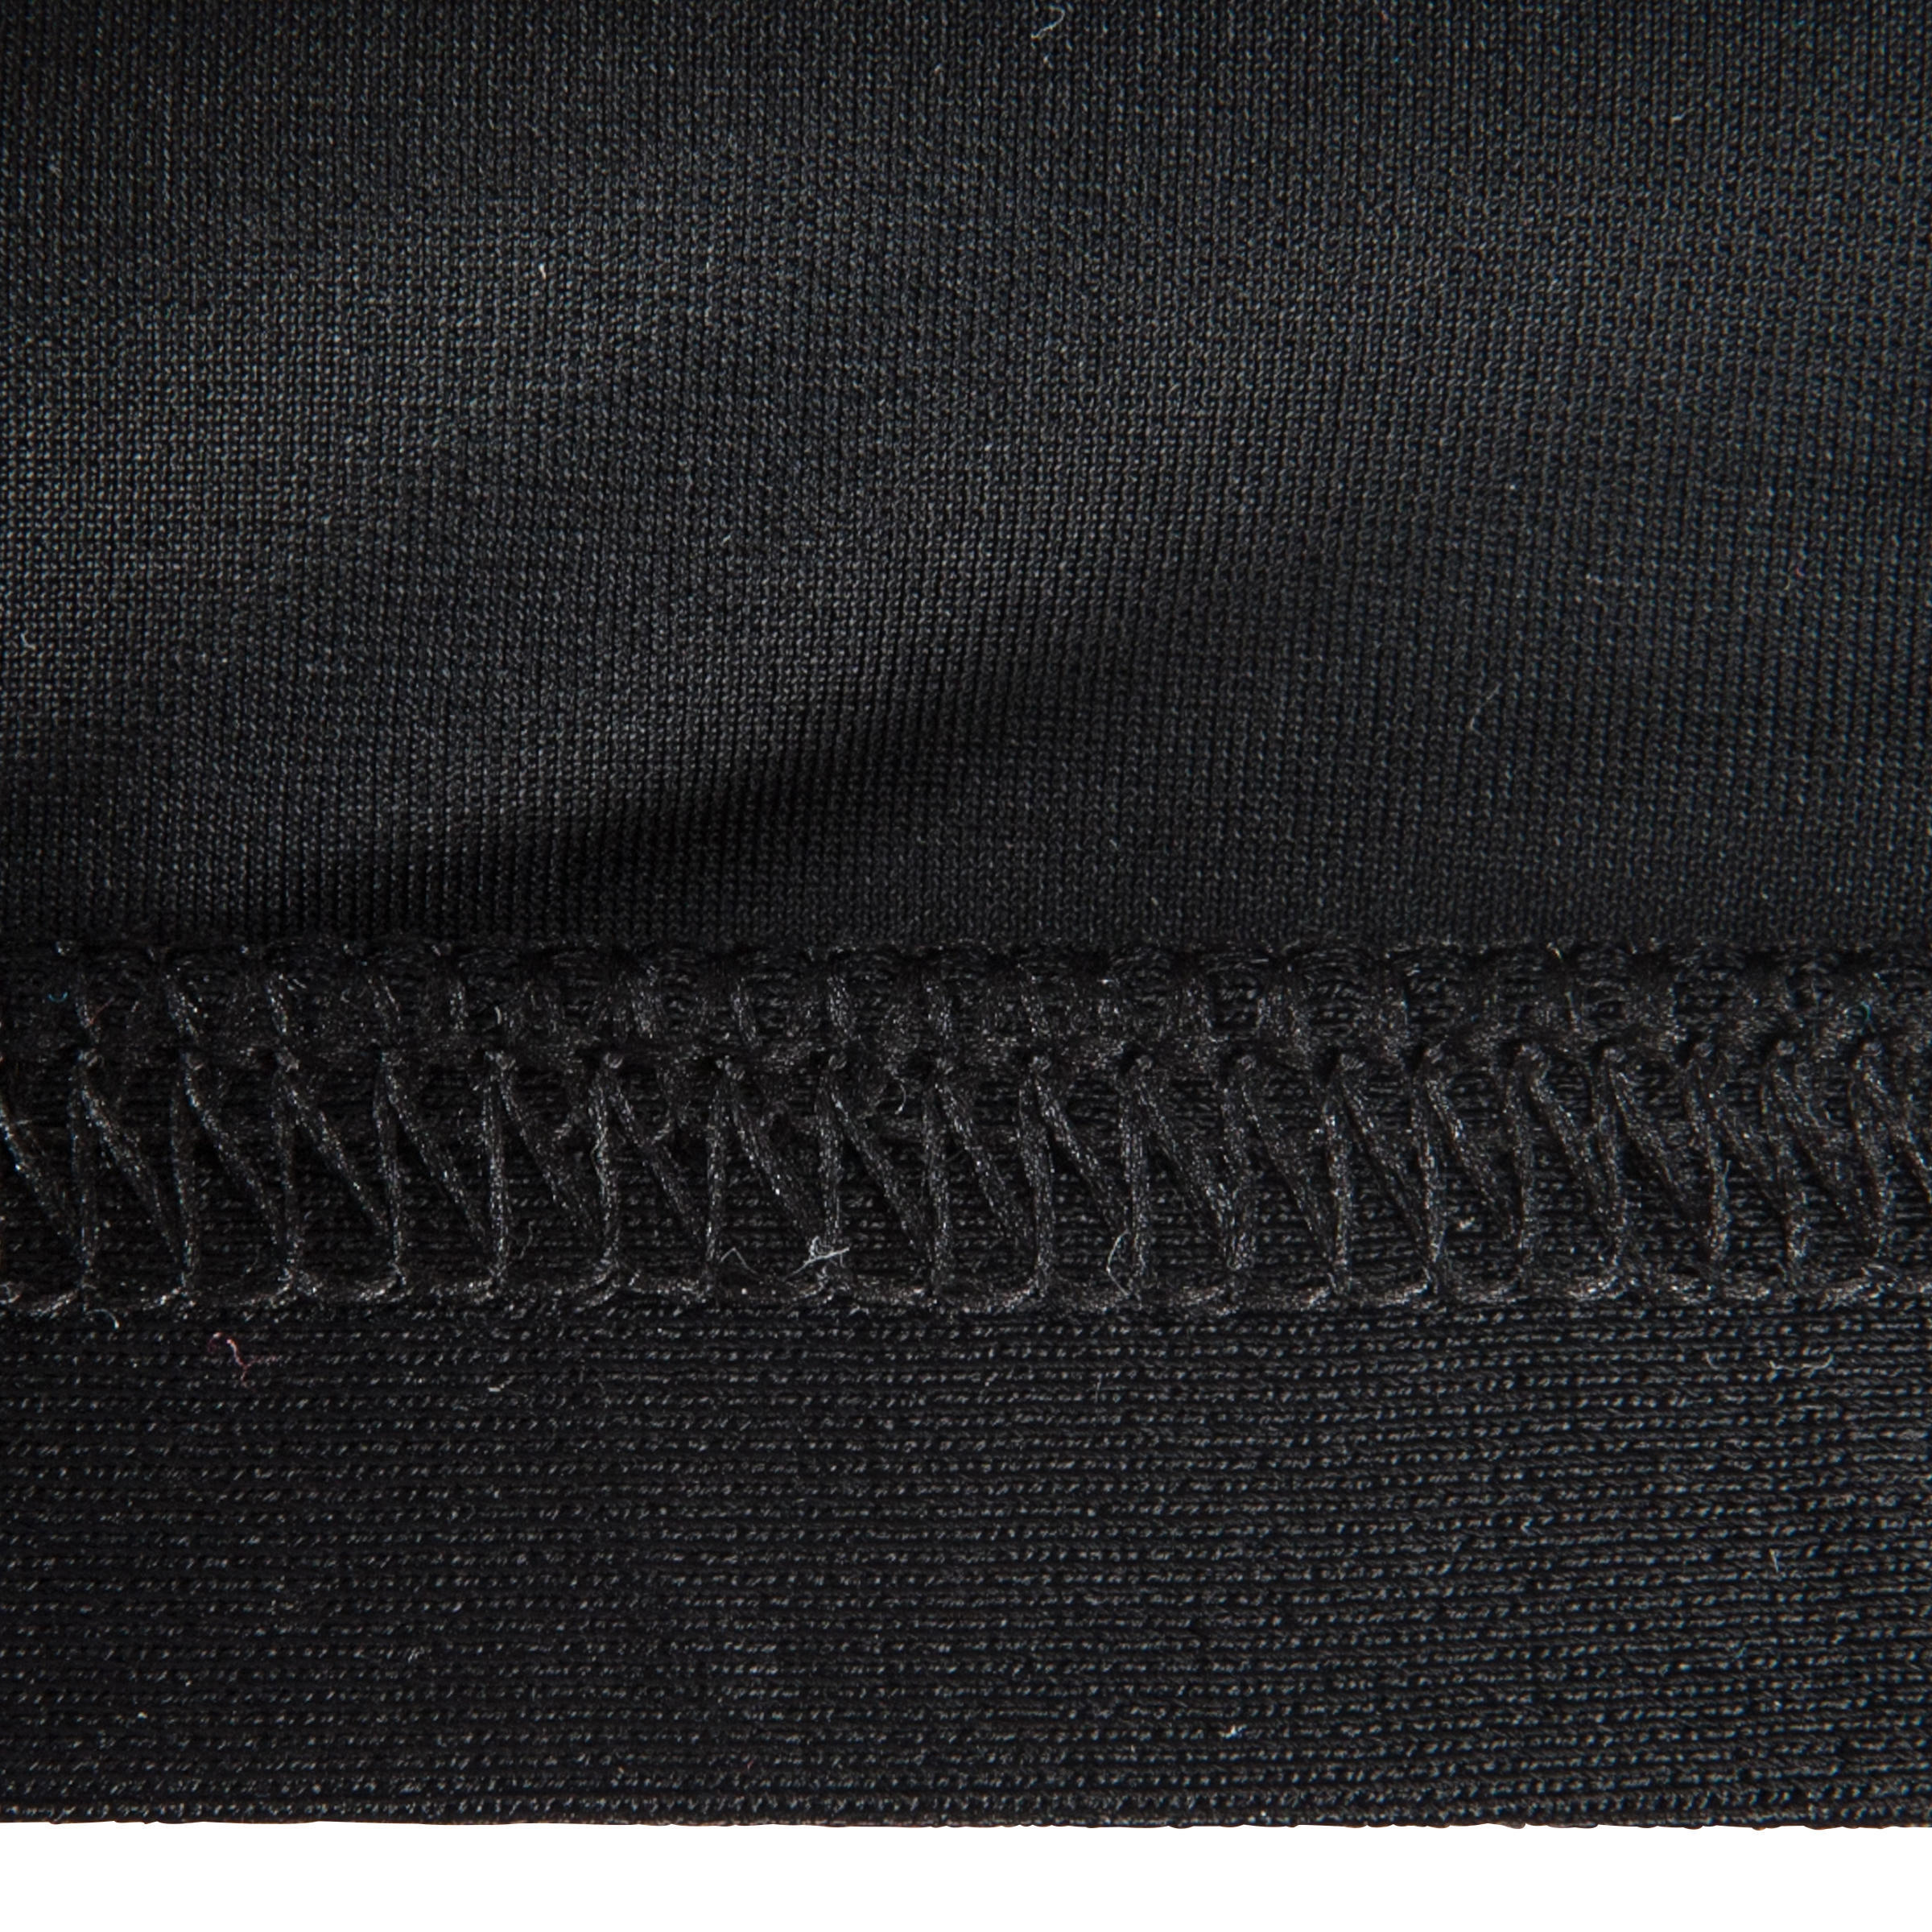 Mesh swim cap - plain fabric - black 8/8